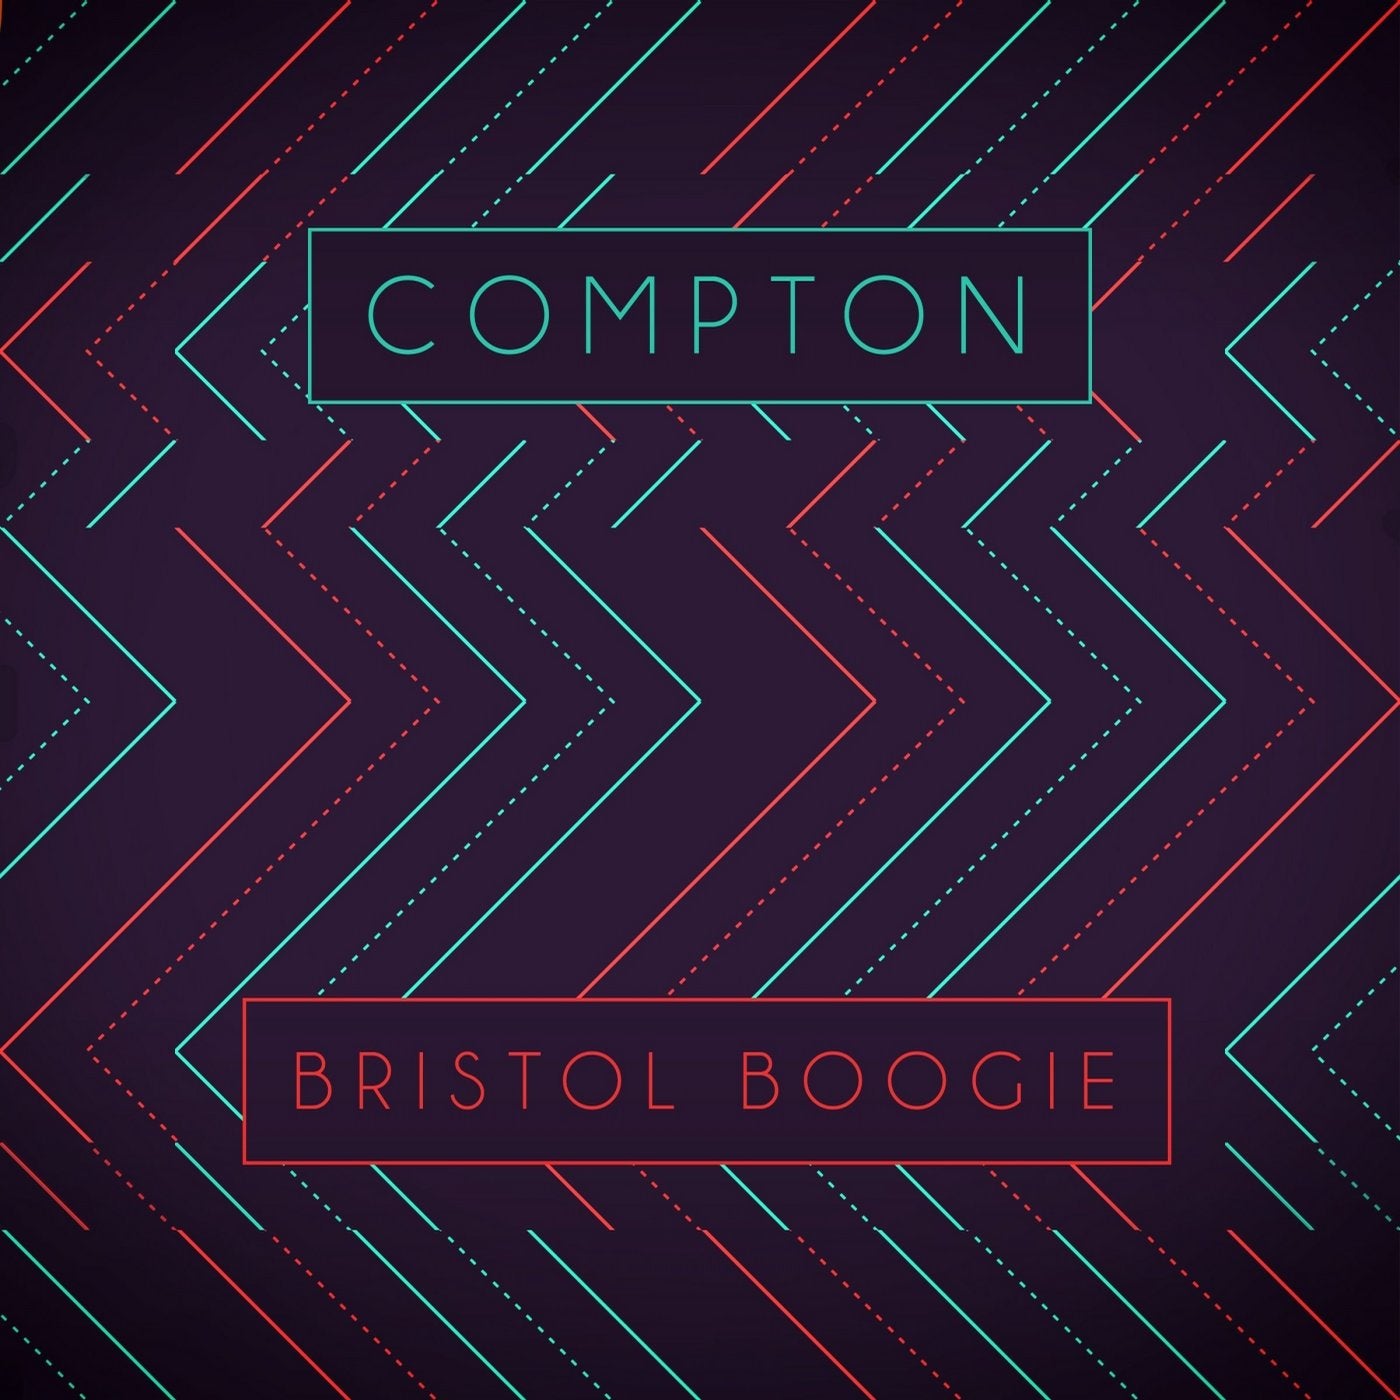 Bristol Boogie